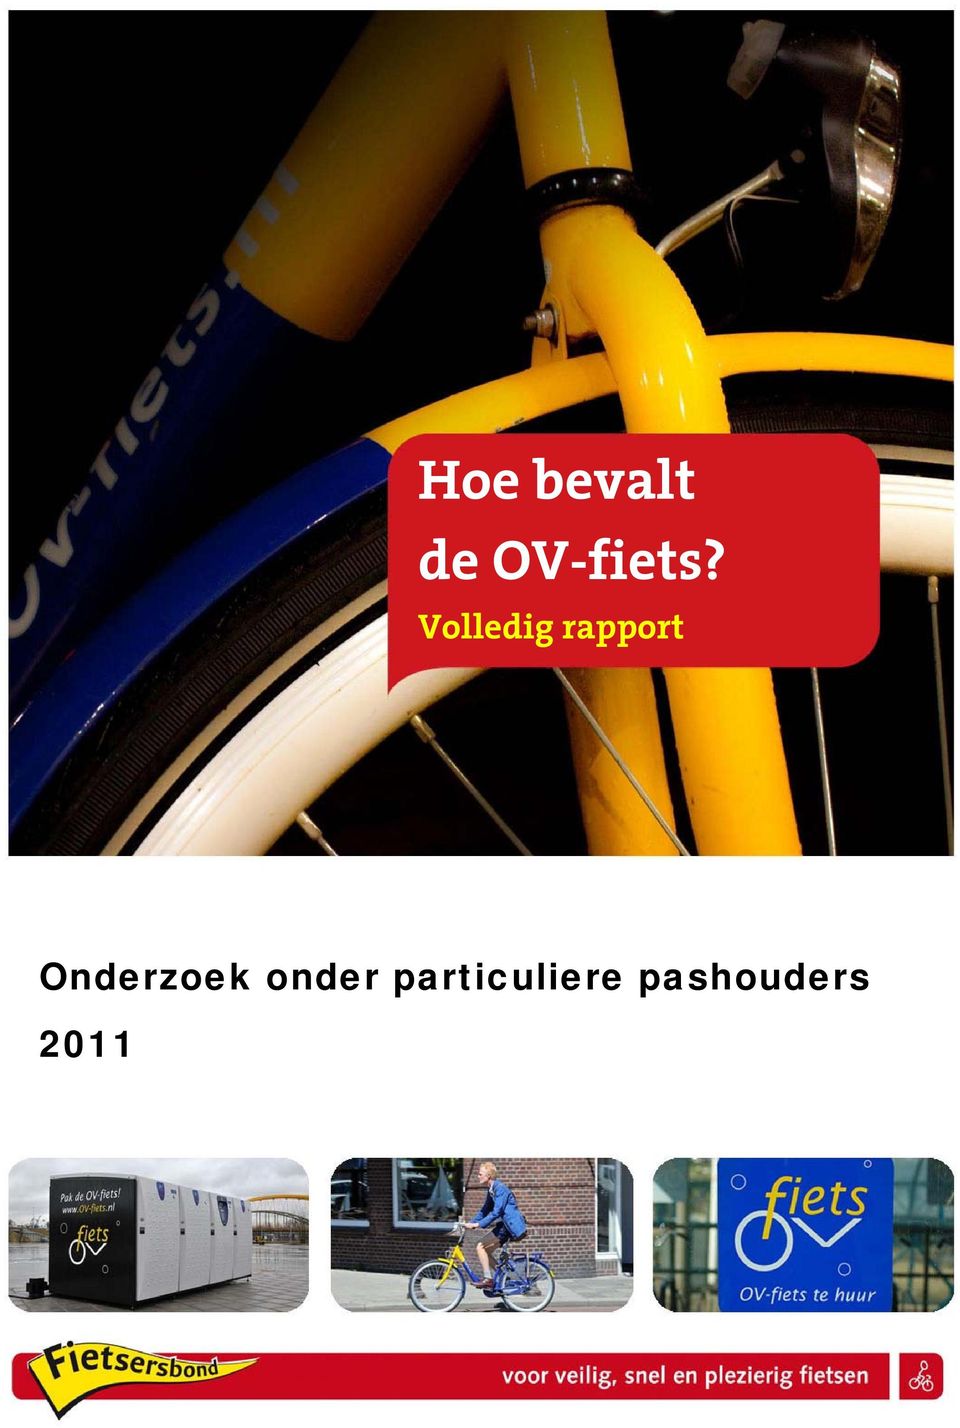 OV-fiets?